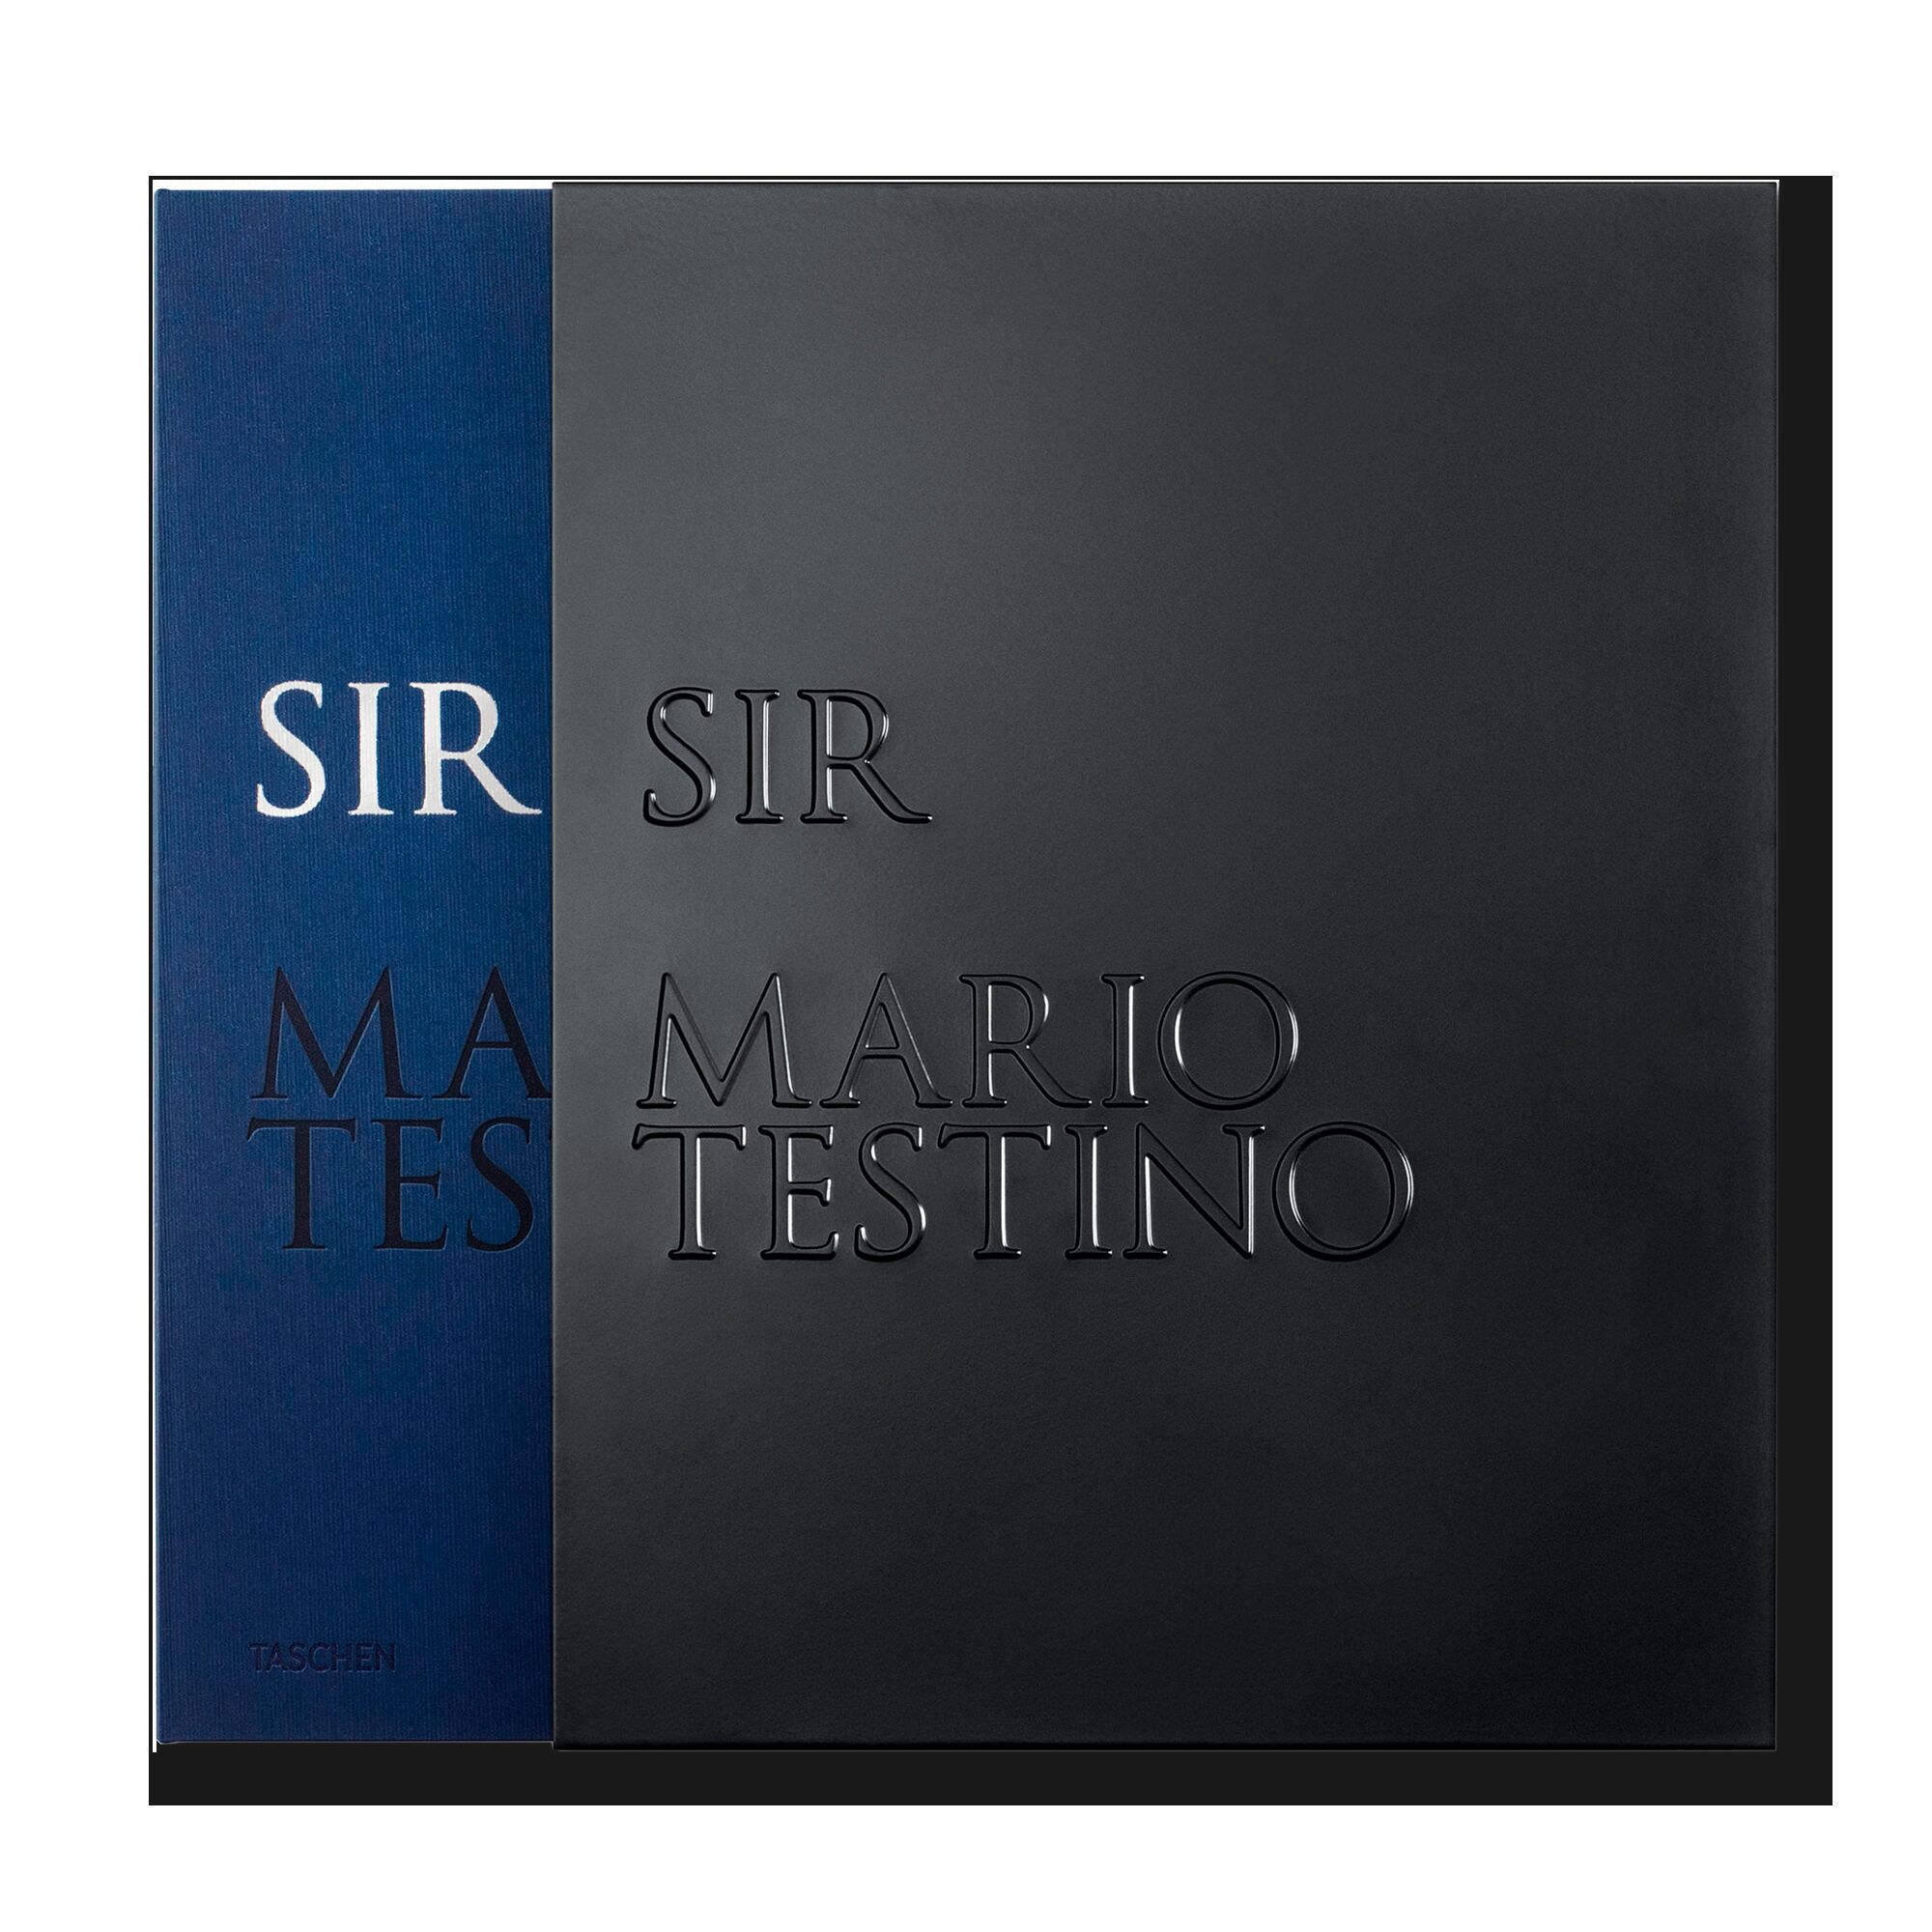 Mario Testino. SIR